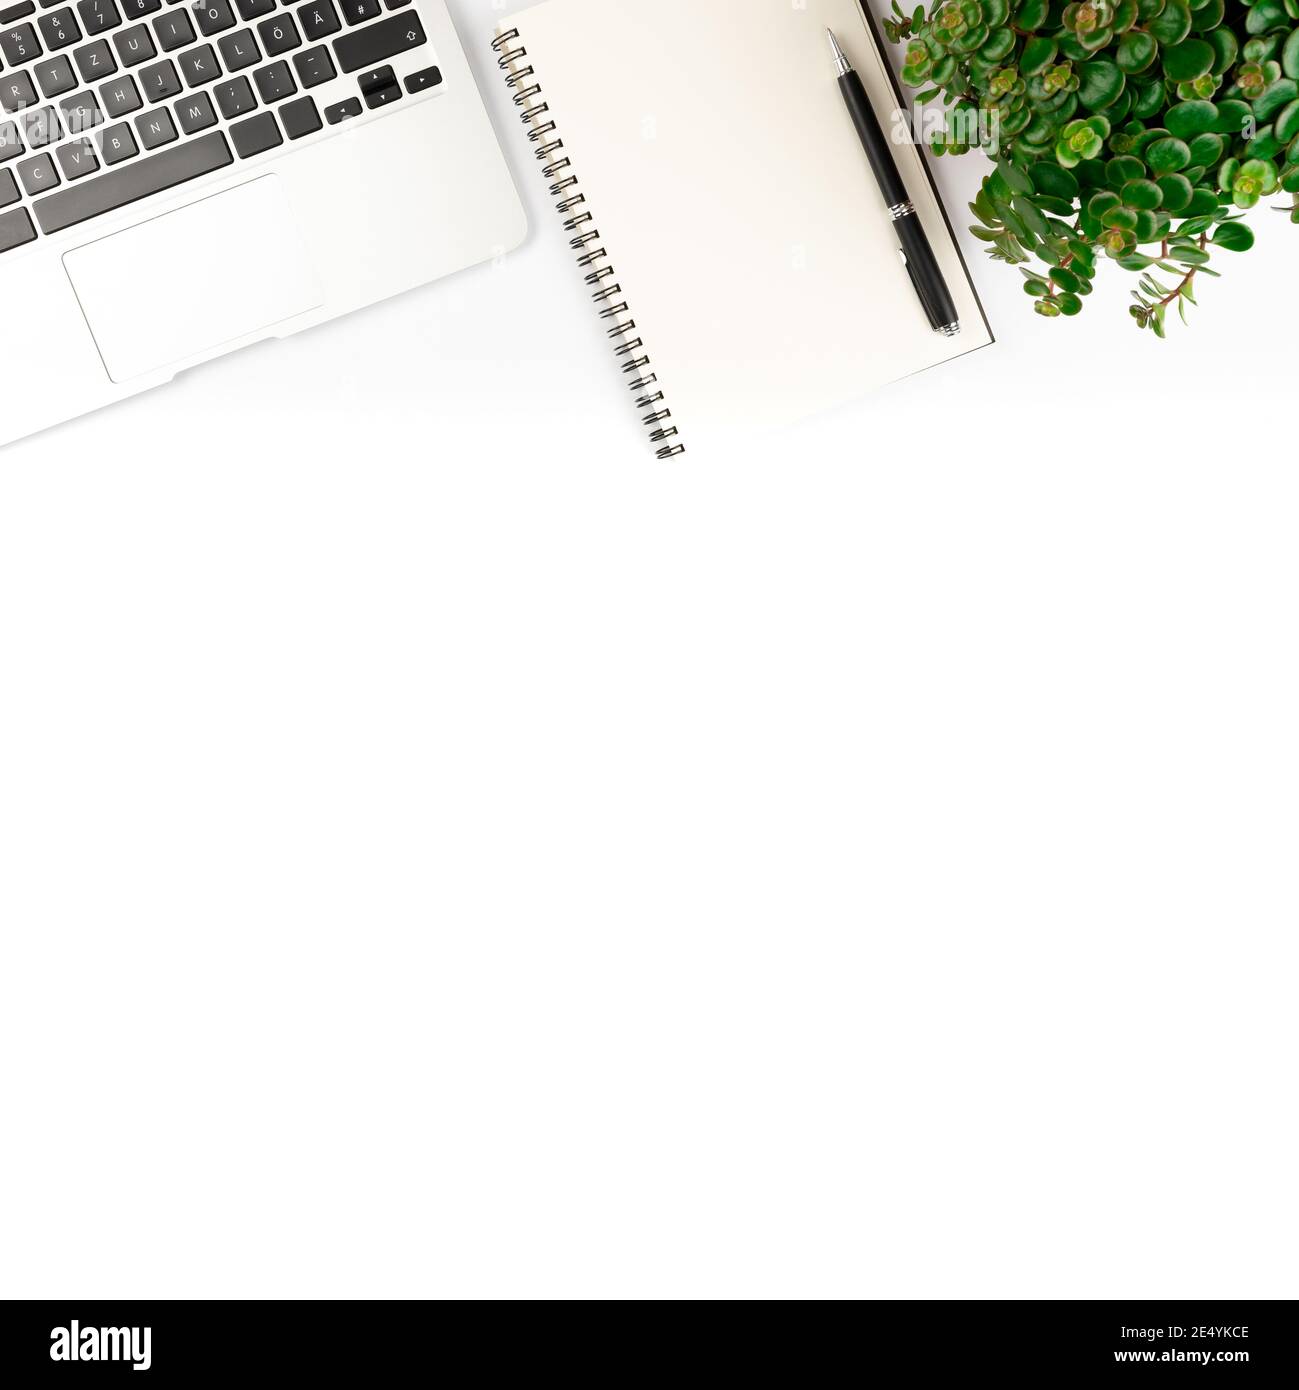 Draufsicht auf Laptop-Computer, Spiralnotepad mit Stift und Topfpflanze auf weißem Hintergrund, sauberes Büro und Geschäftskonzept Stockfoto